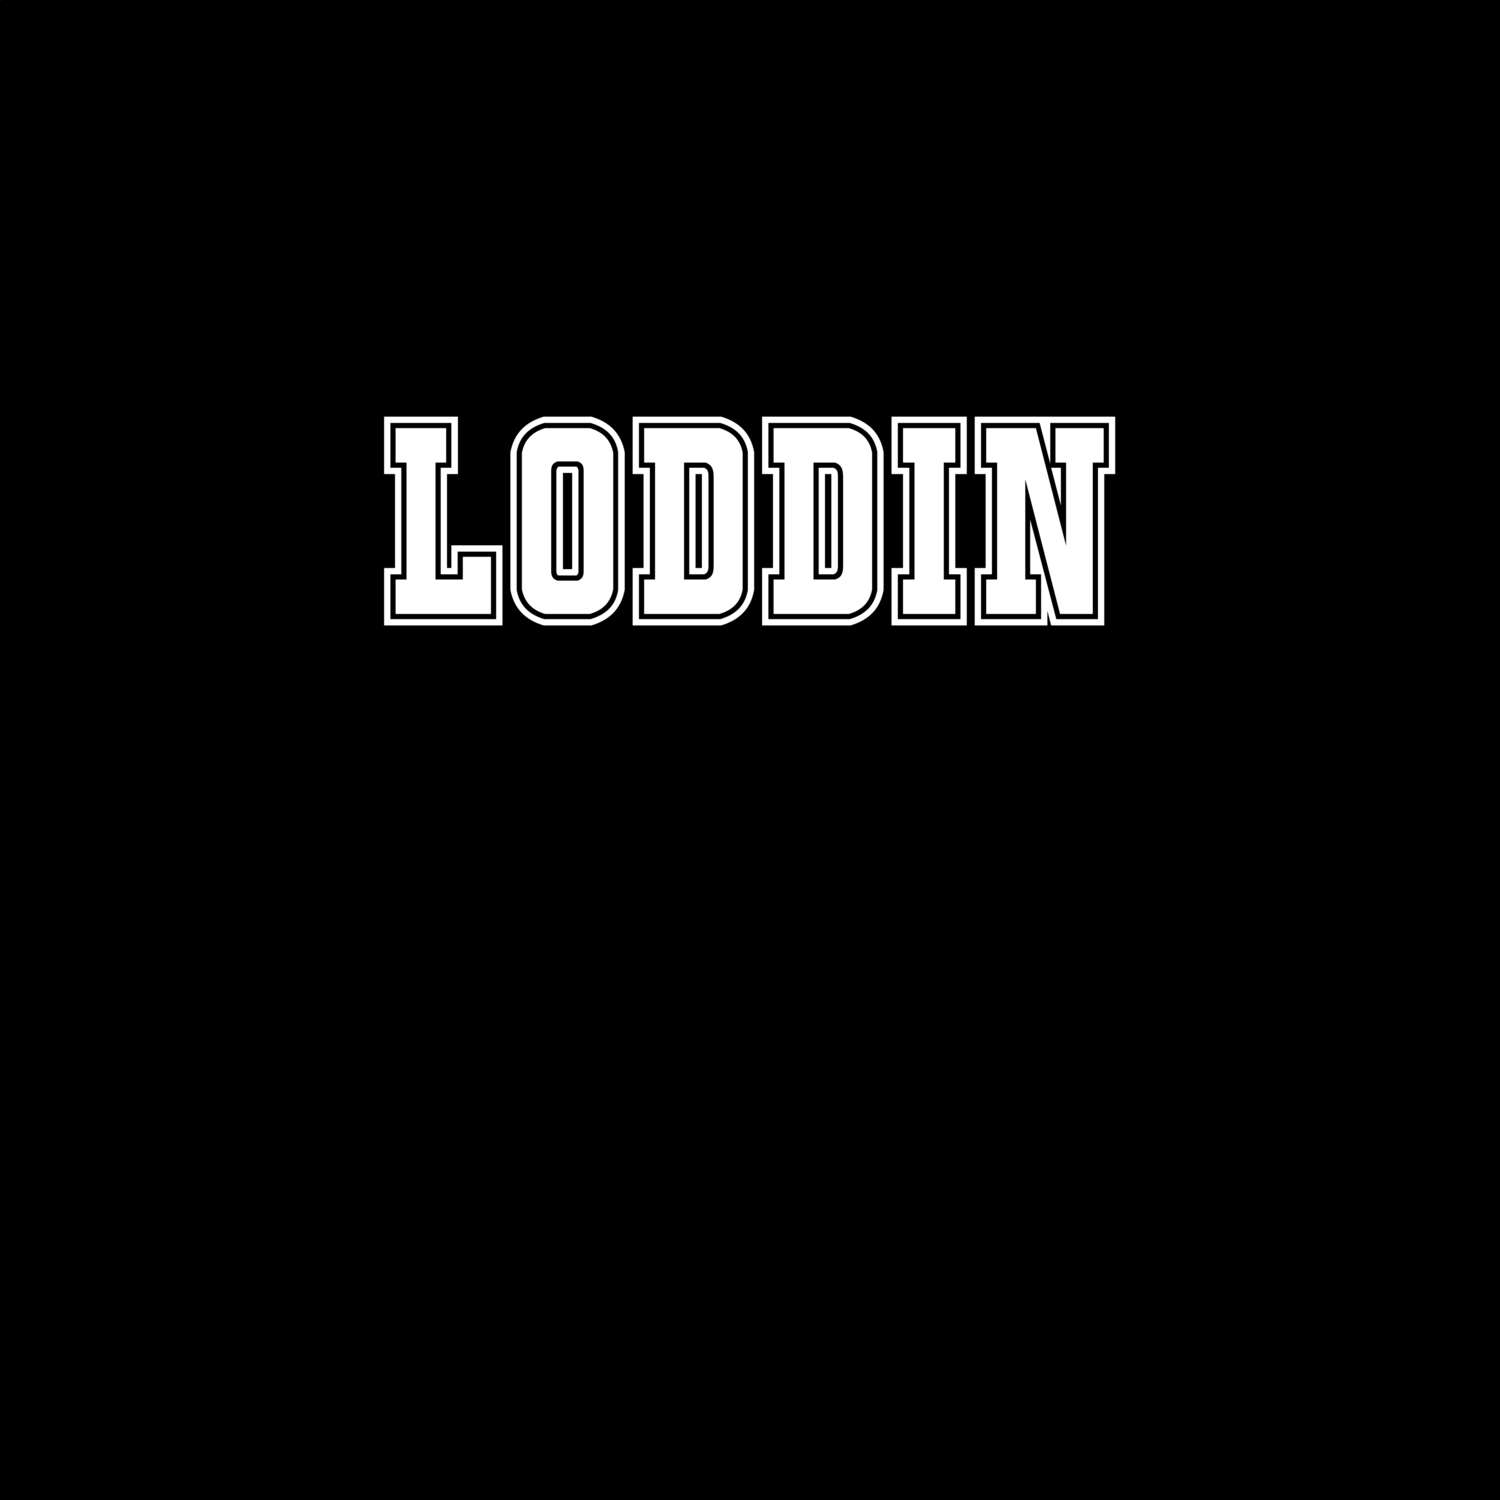 Loddin T-Shirt »Classic«